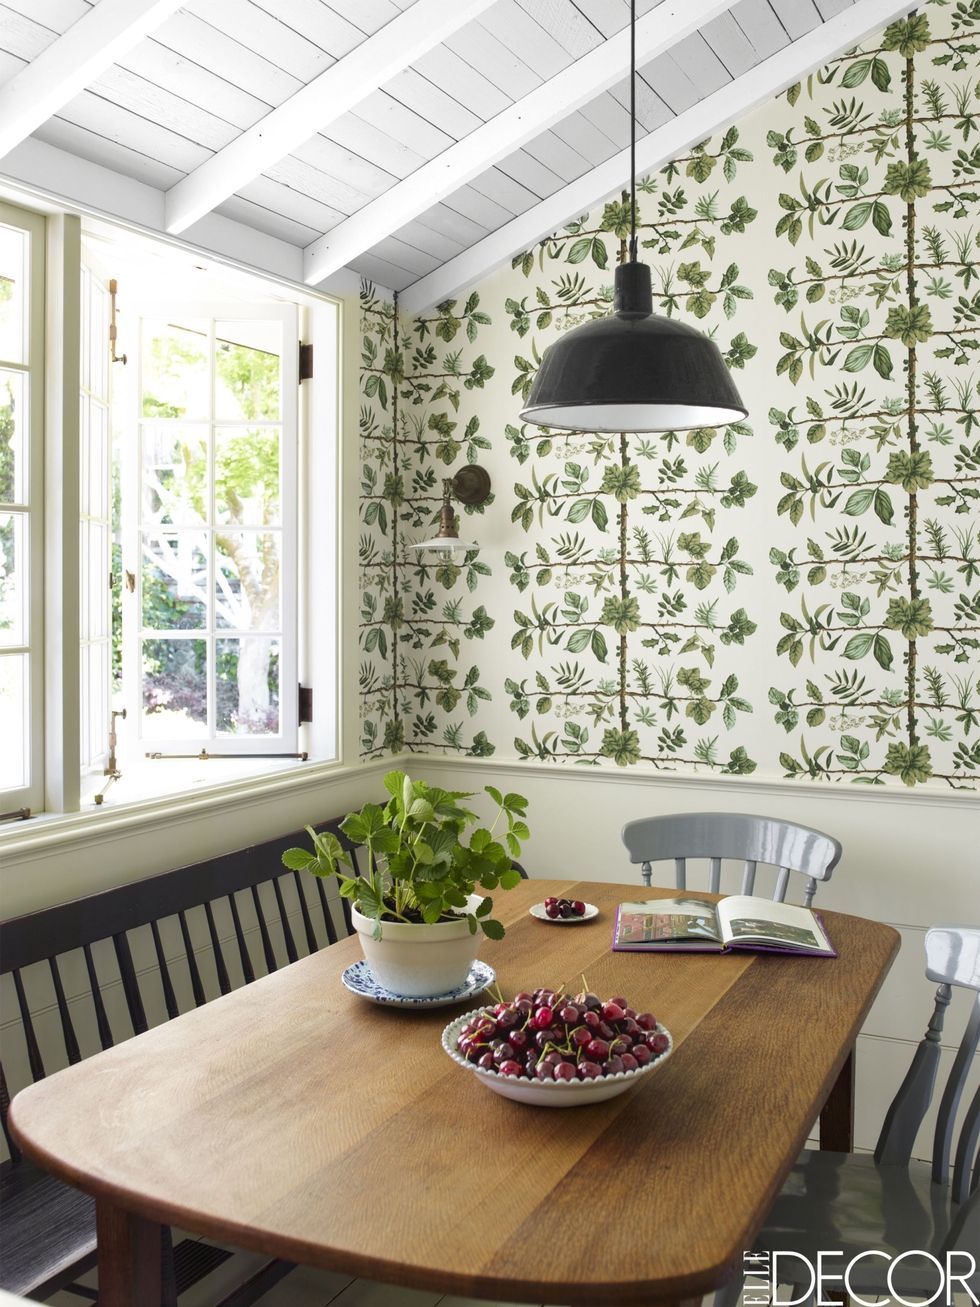 8 Best Creative Kitchen Wallpaper Ideas  Bonito Designs